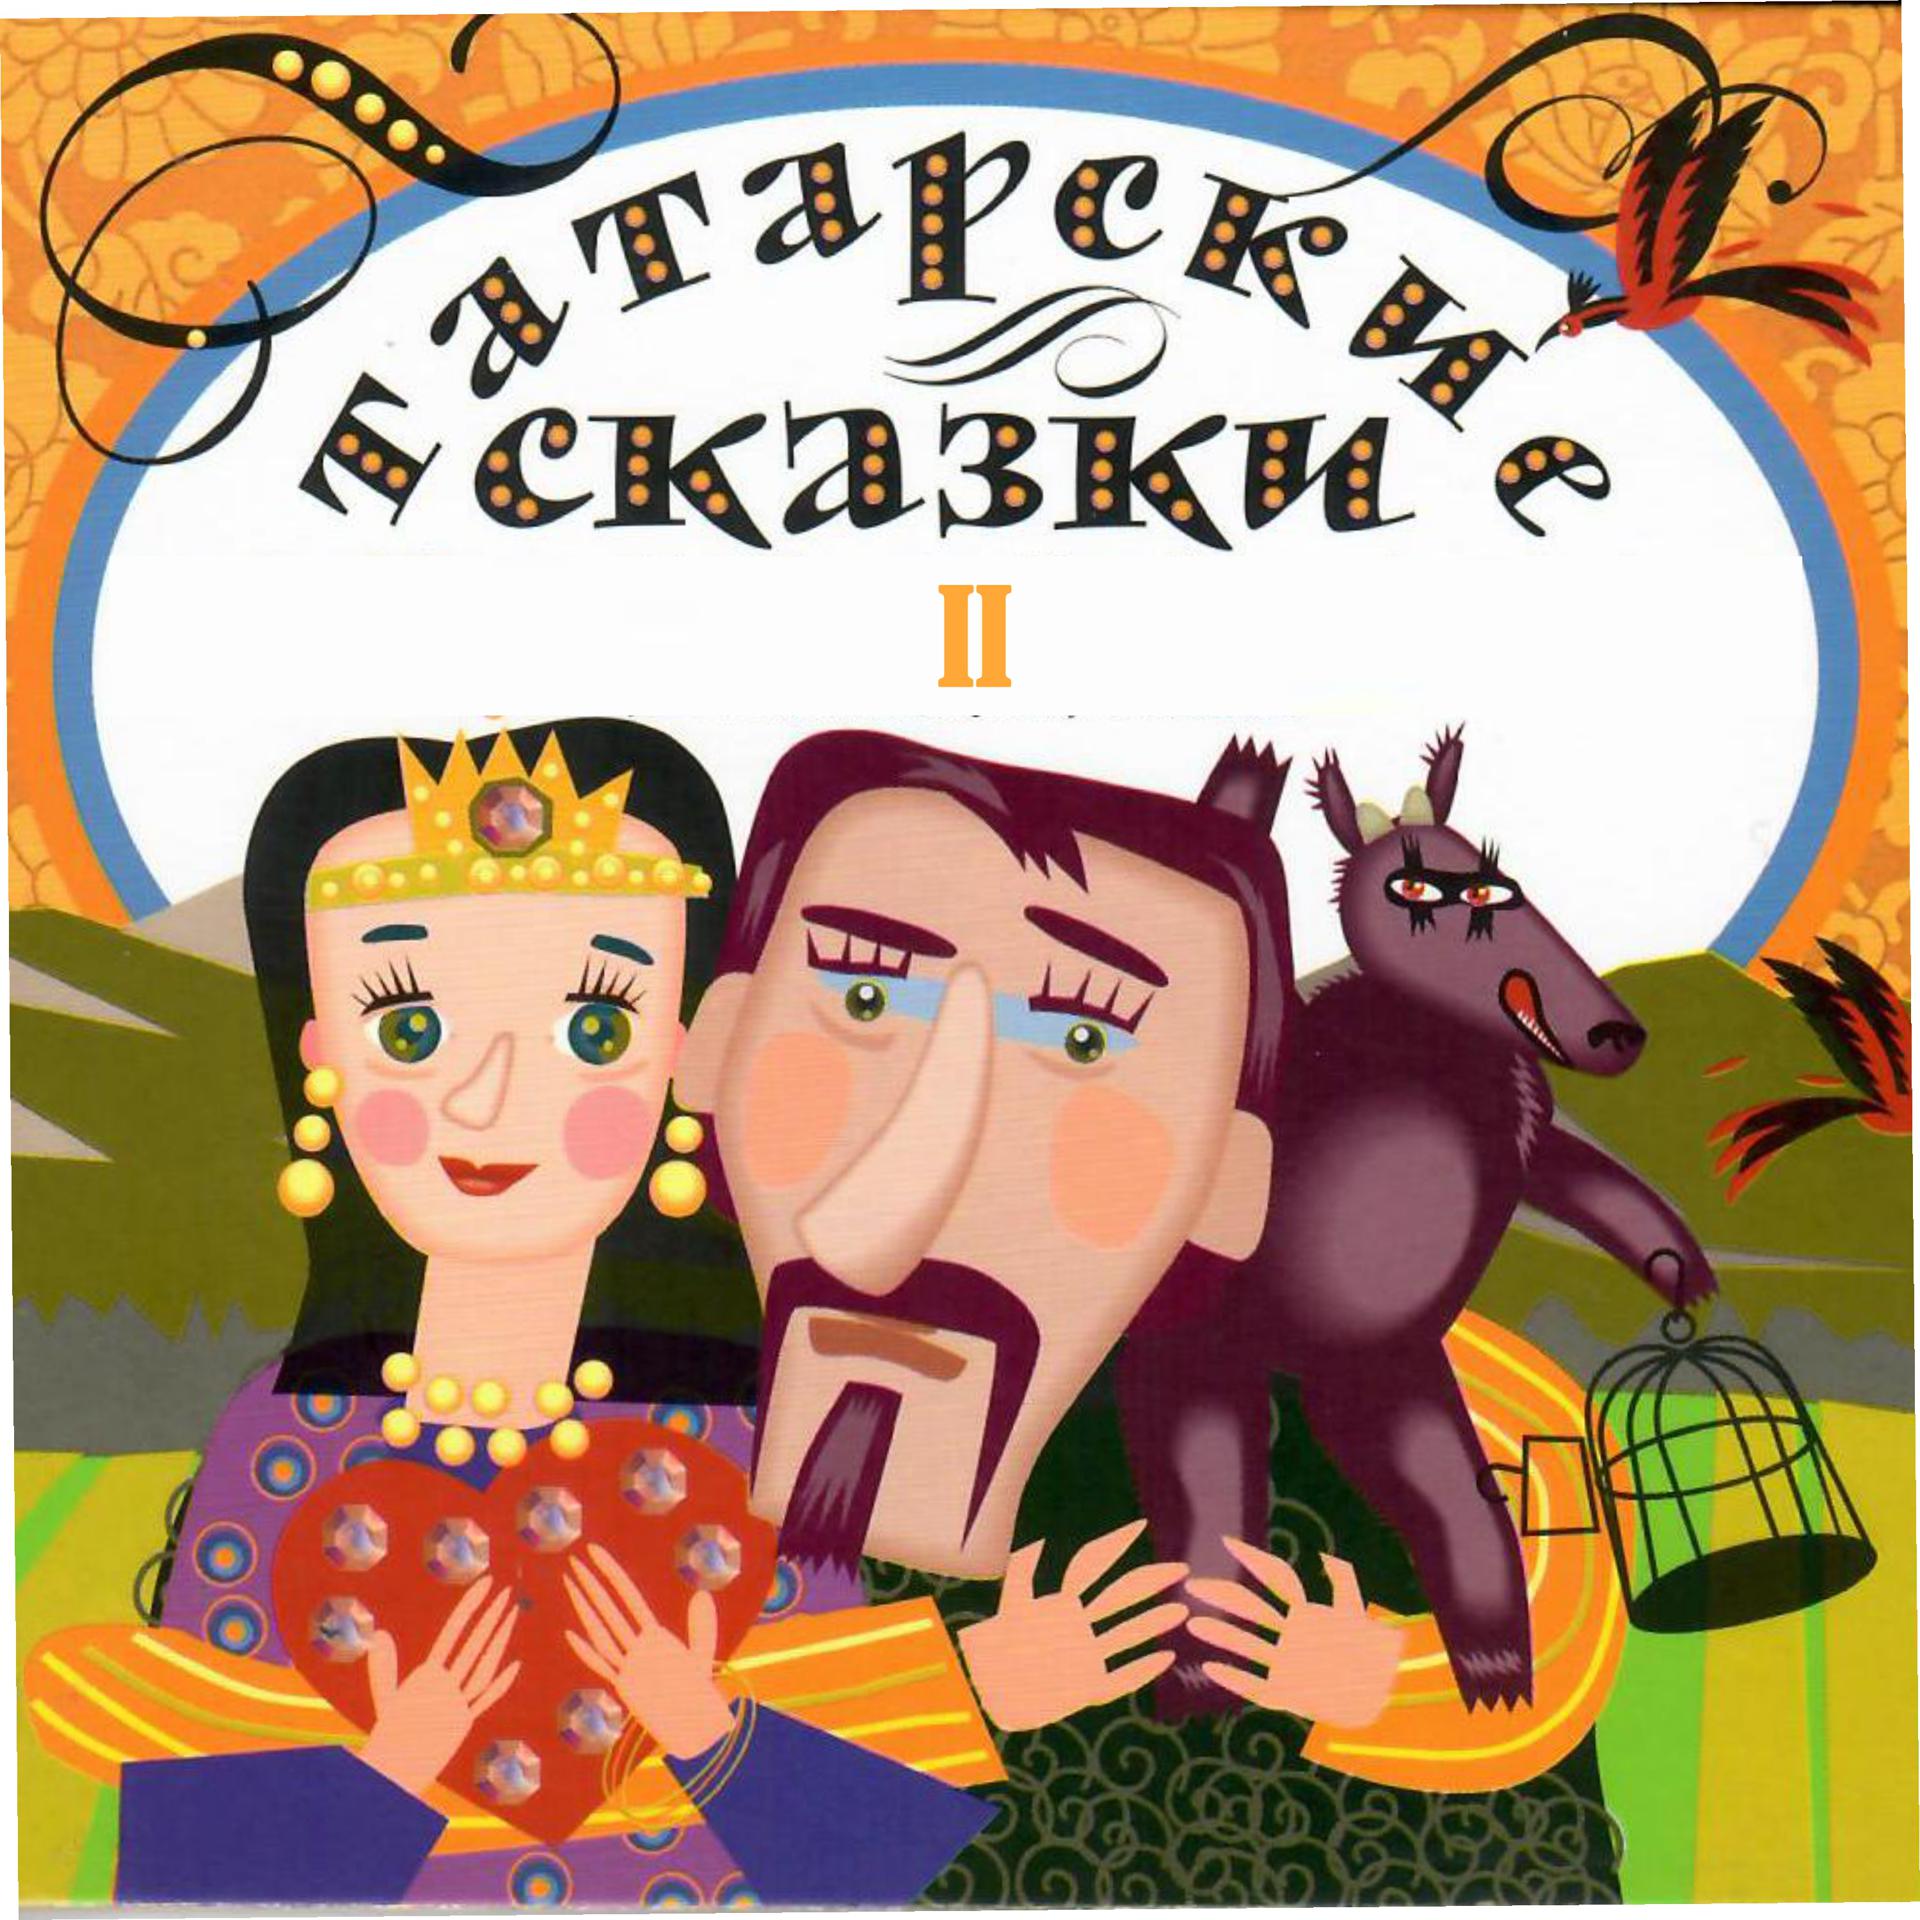 Татарские народные произведения